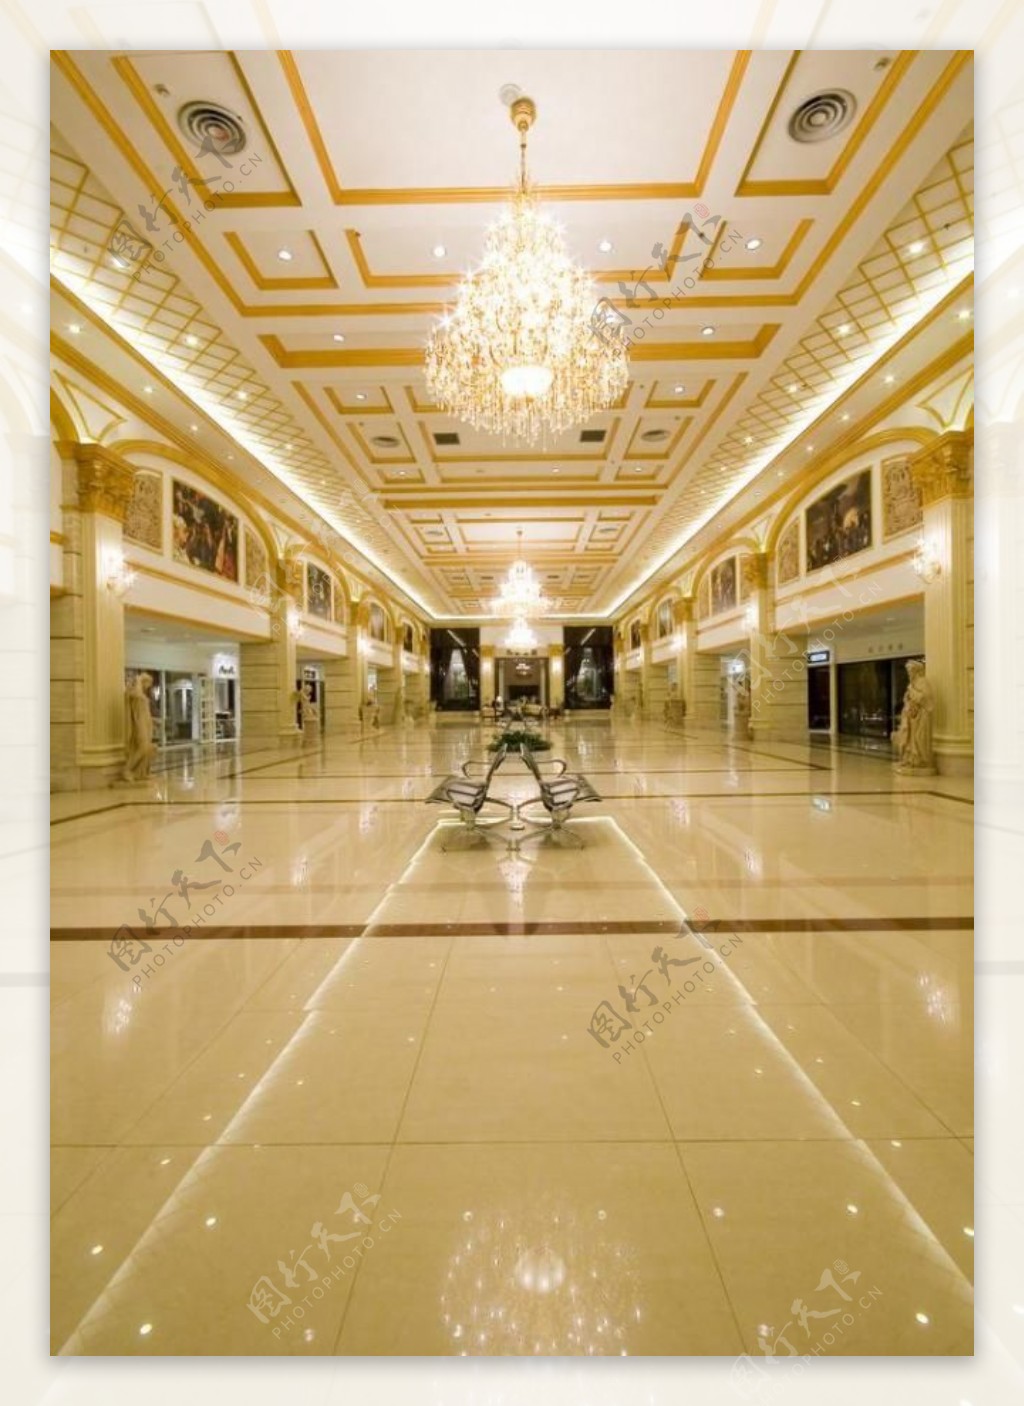 月星无锡商场大厅卢浮宫欧式豪华气派建筑建筑摄影摄影室内设计摄影图片